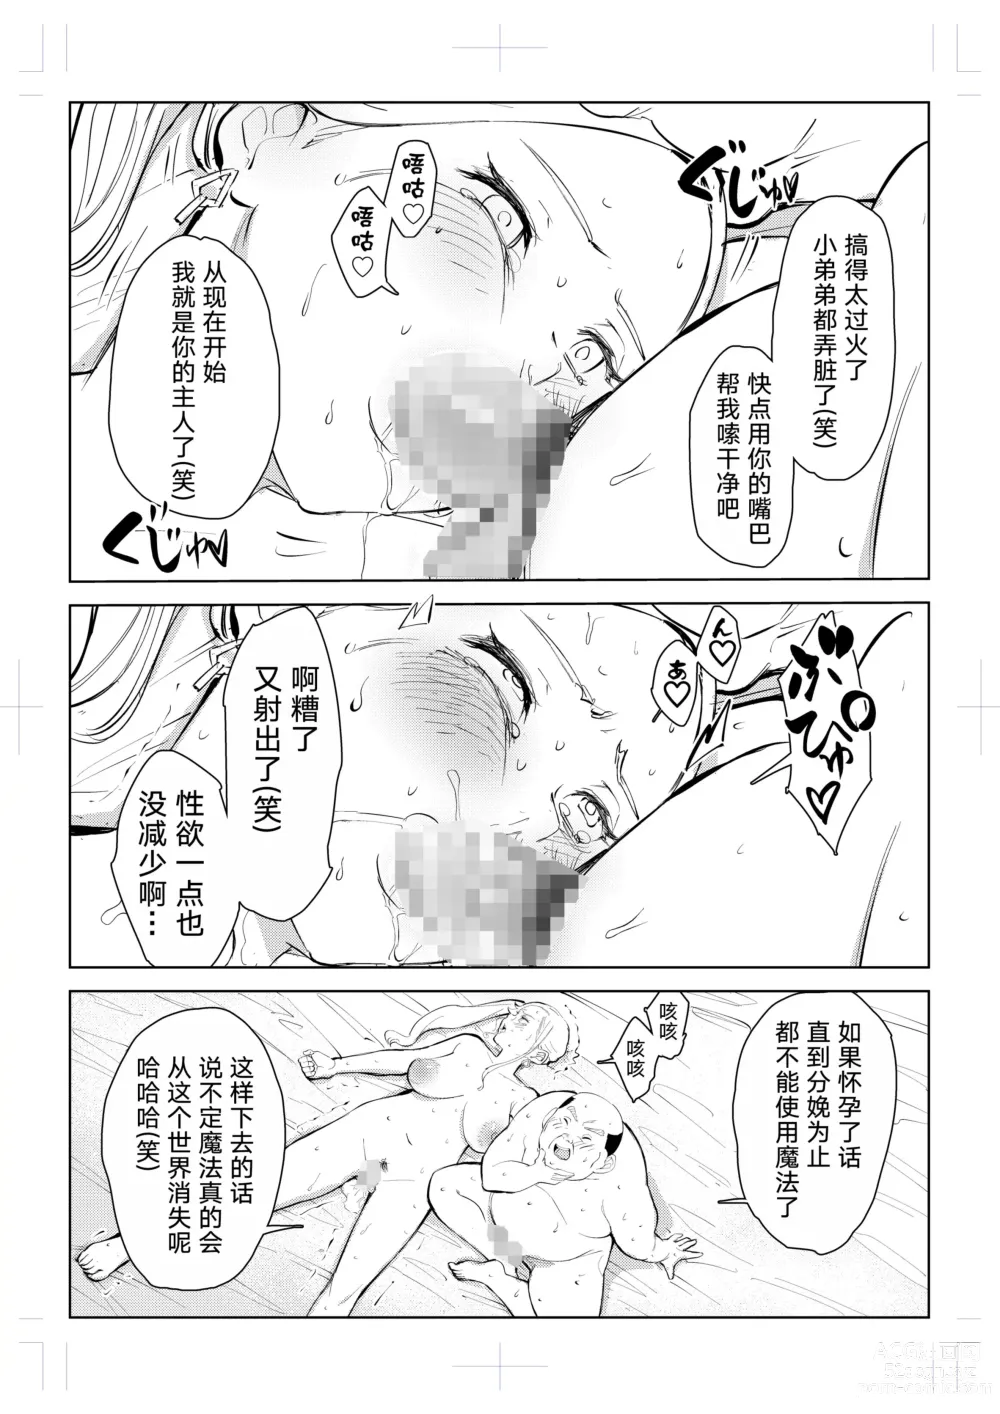 Page 108 of doujinshi 40-sai no Mahoutsukai 0